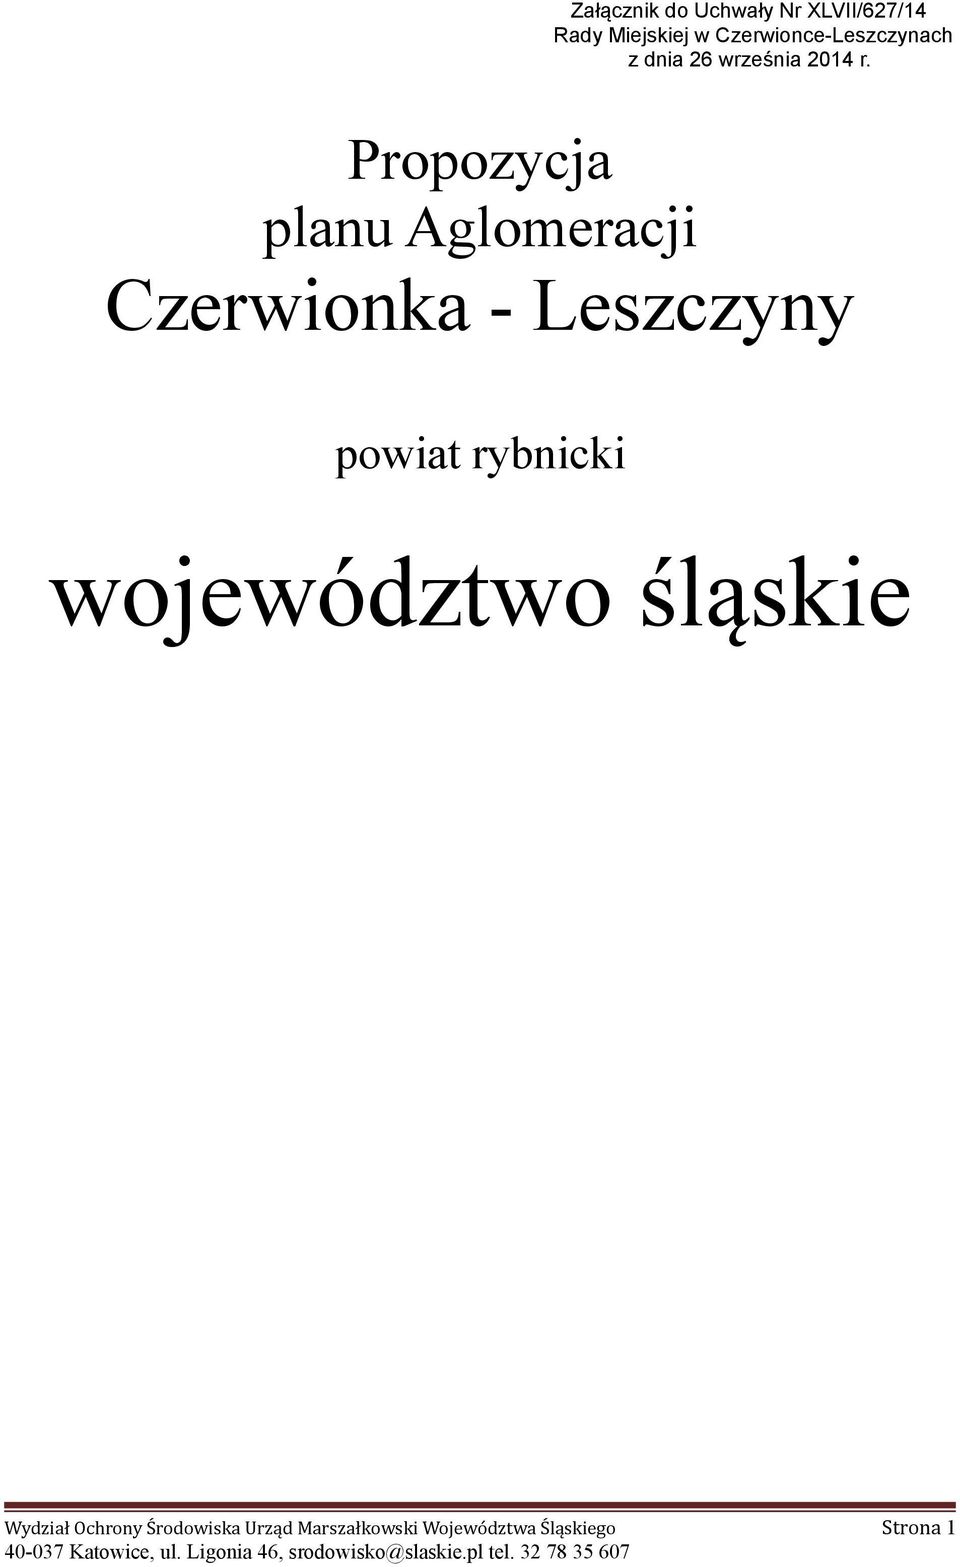 Propozycja planu Aglomeracji Czerwionka - Leszczyny powiat